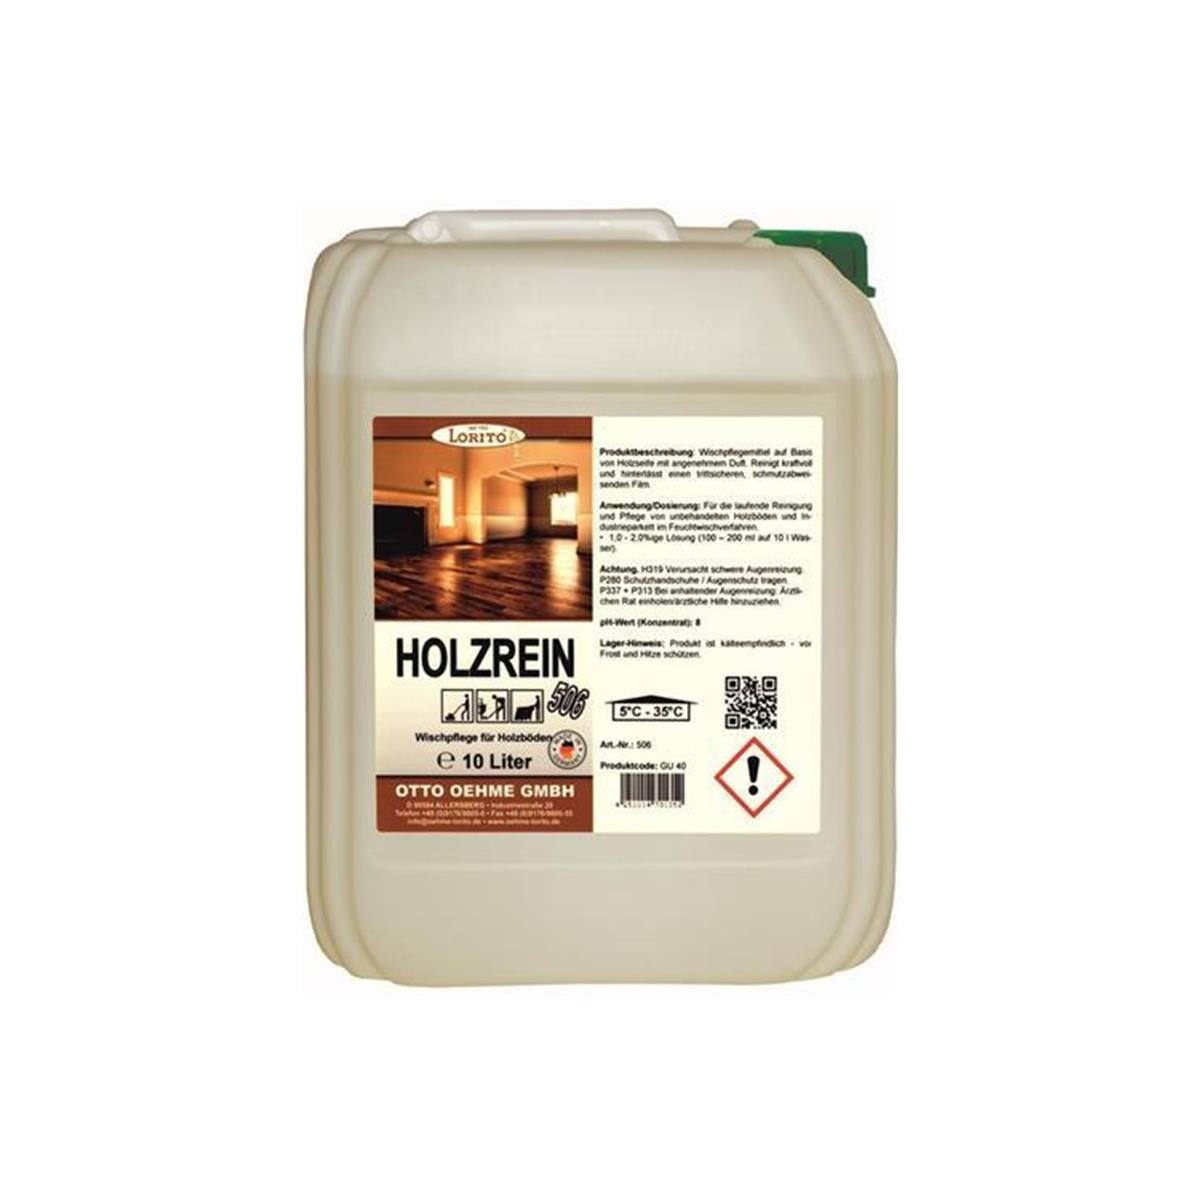 Holzreiniger Holzrein 506 5 Liter